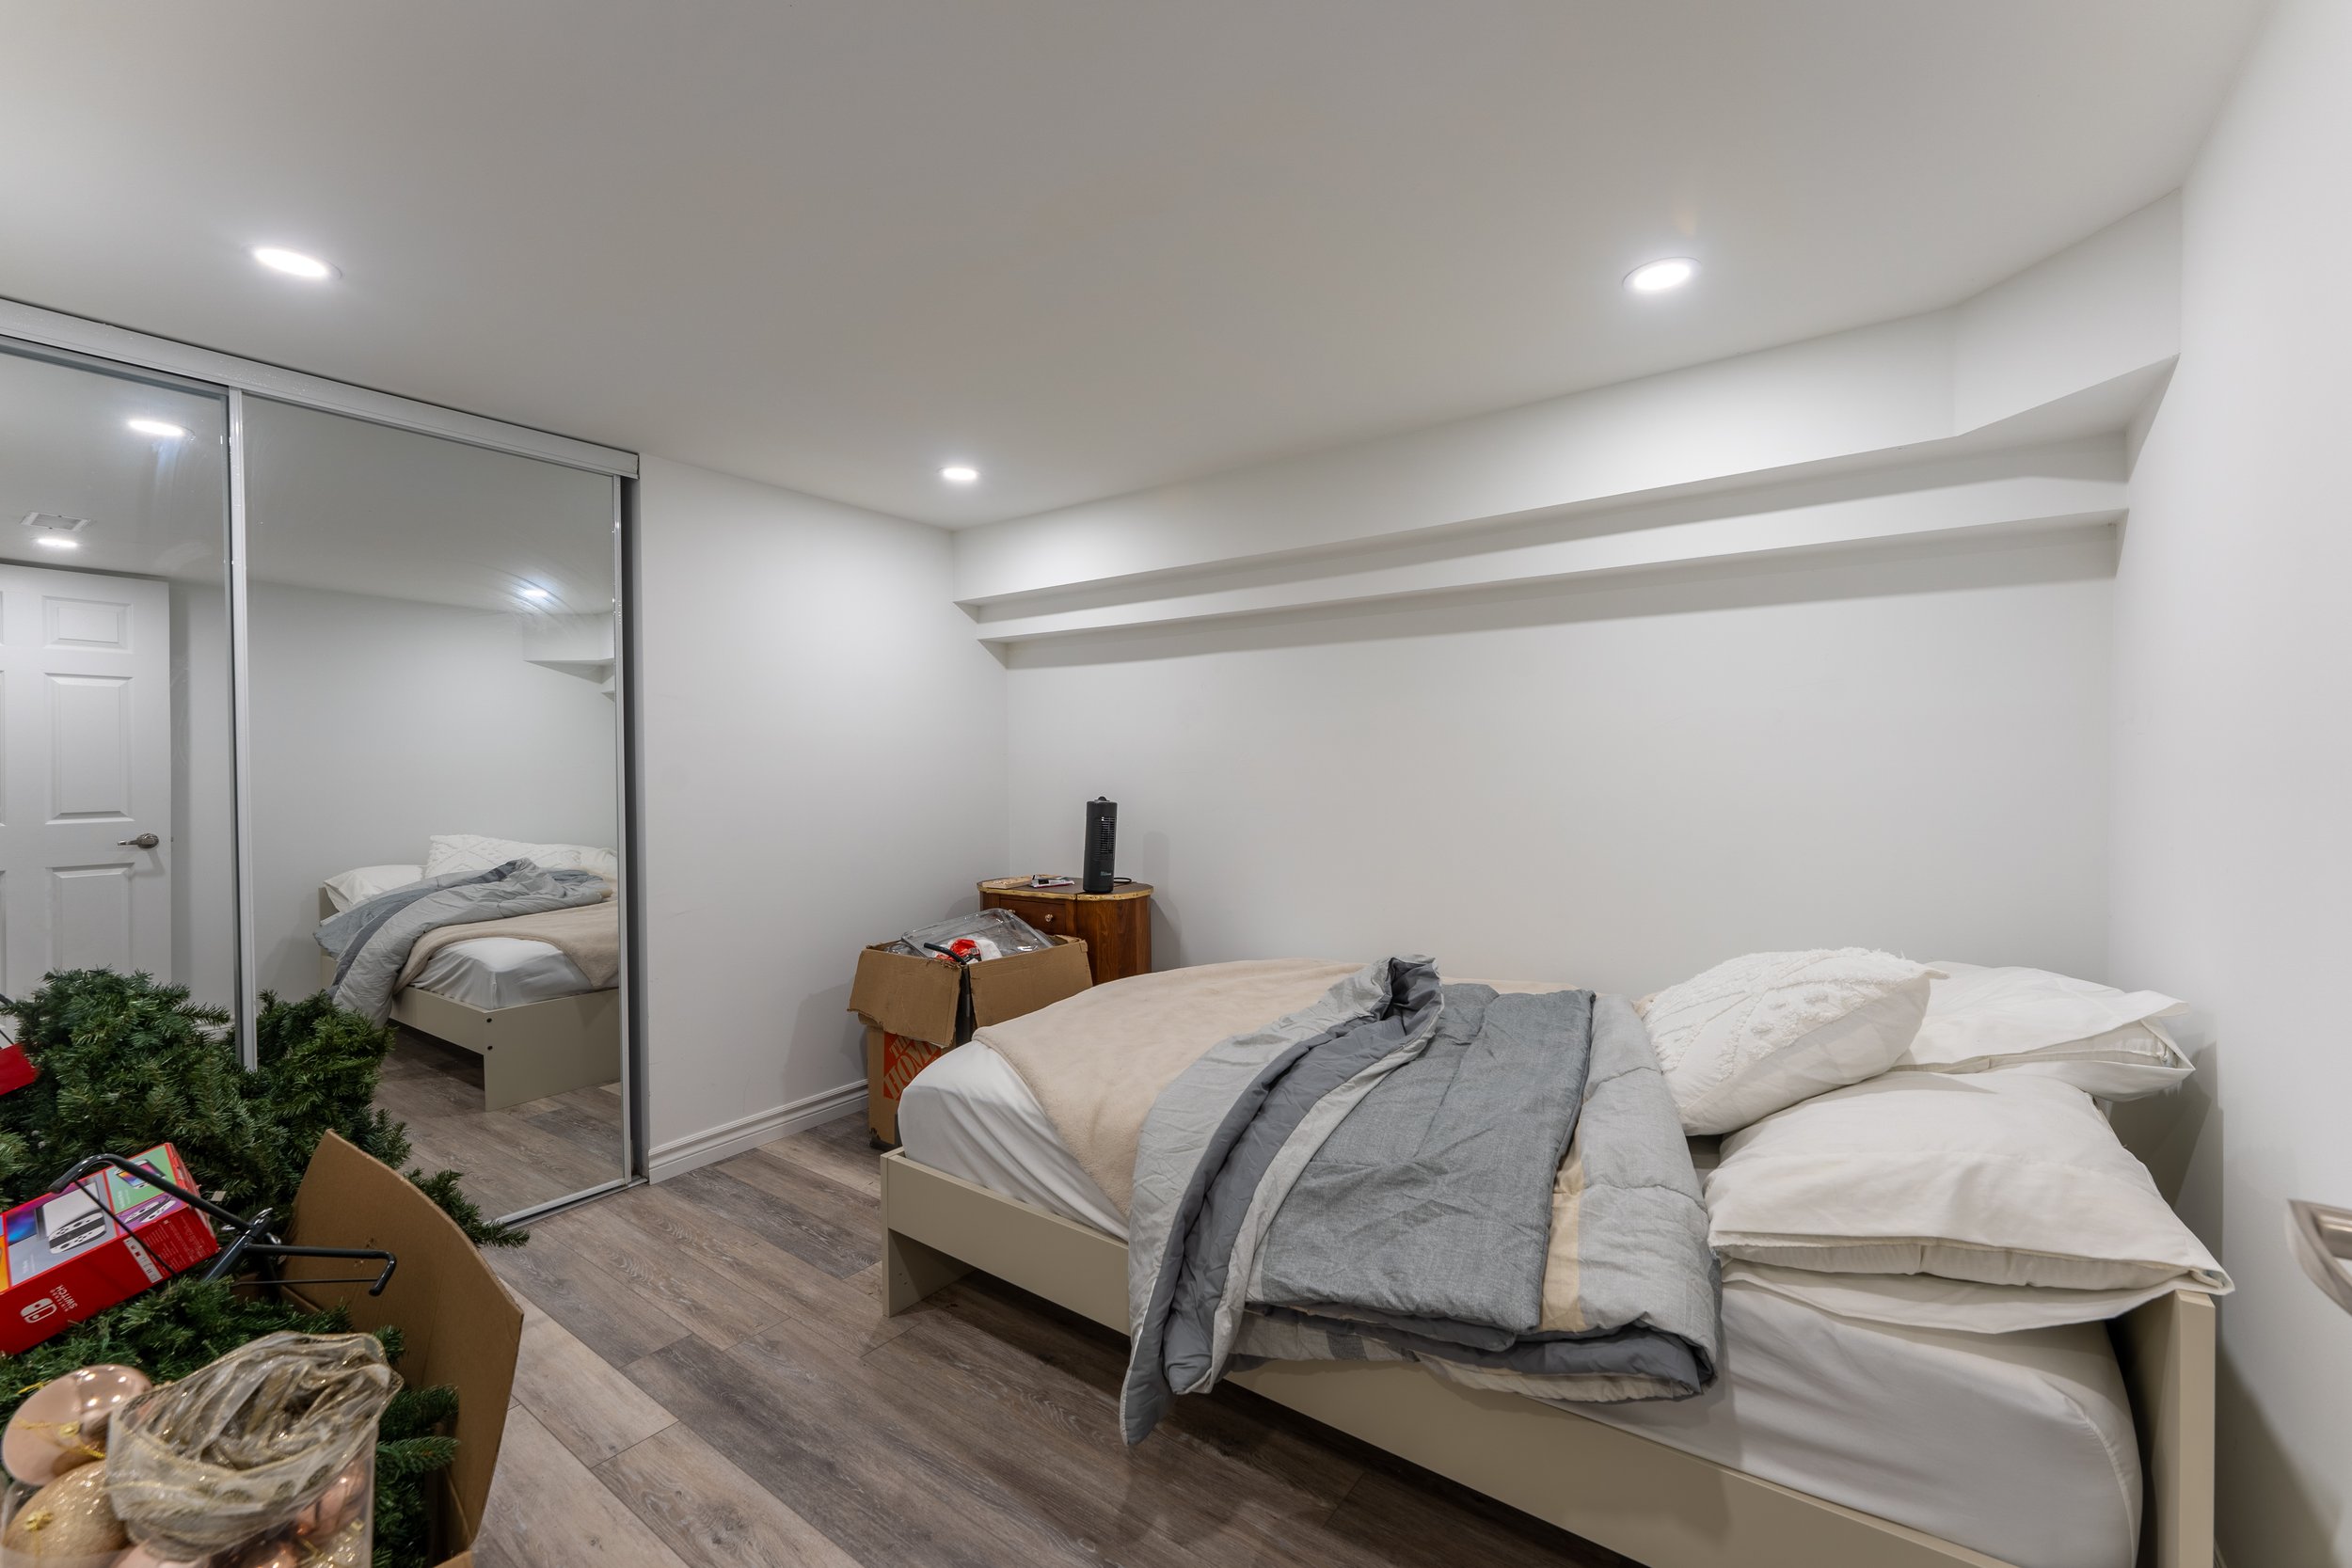 08 - DSC02713-HDR -Basement Bedroom.jpg